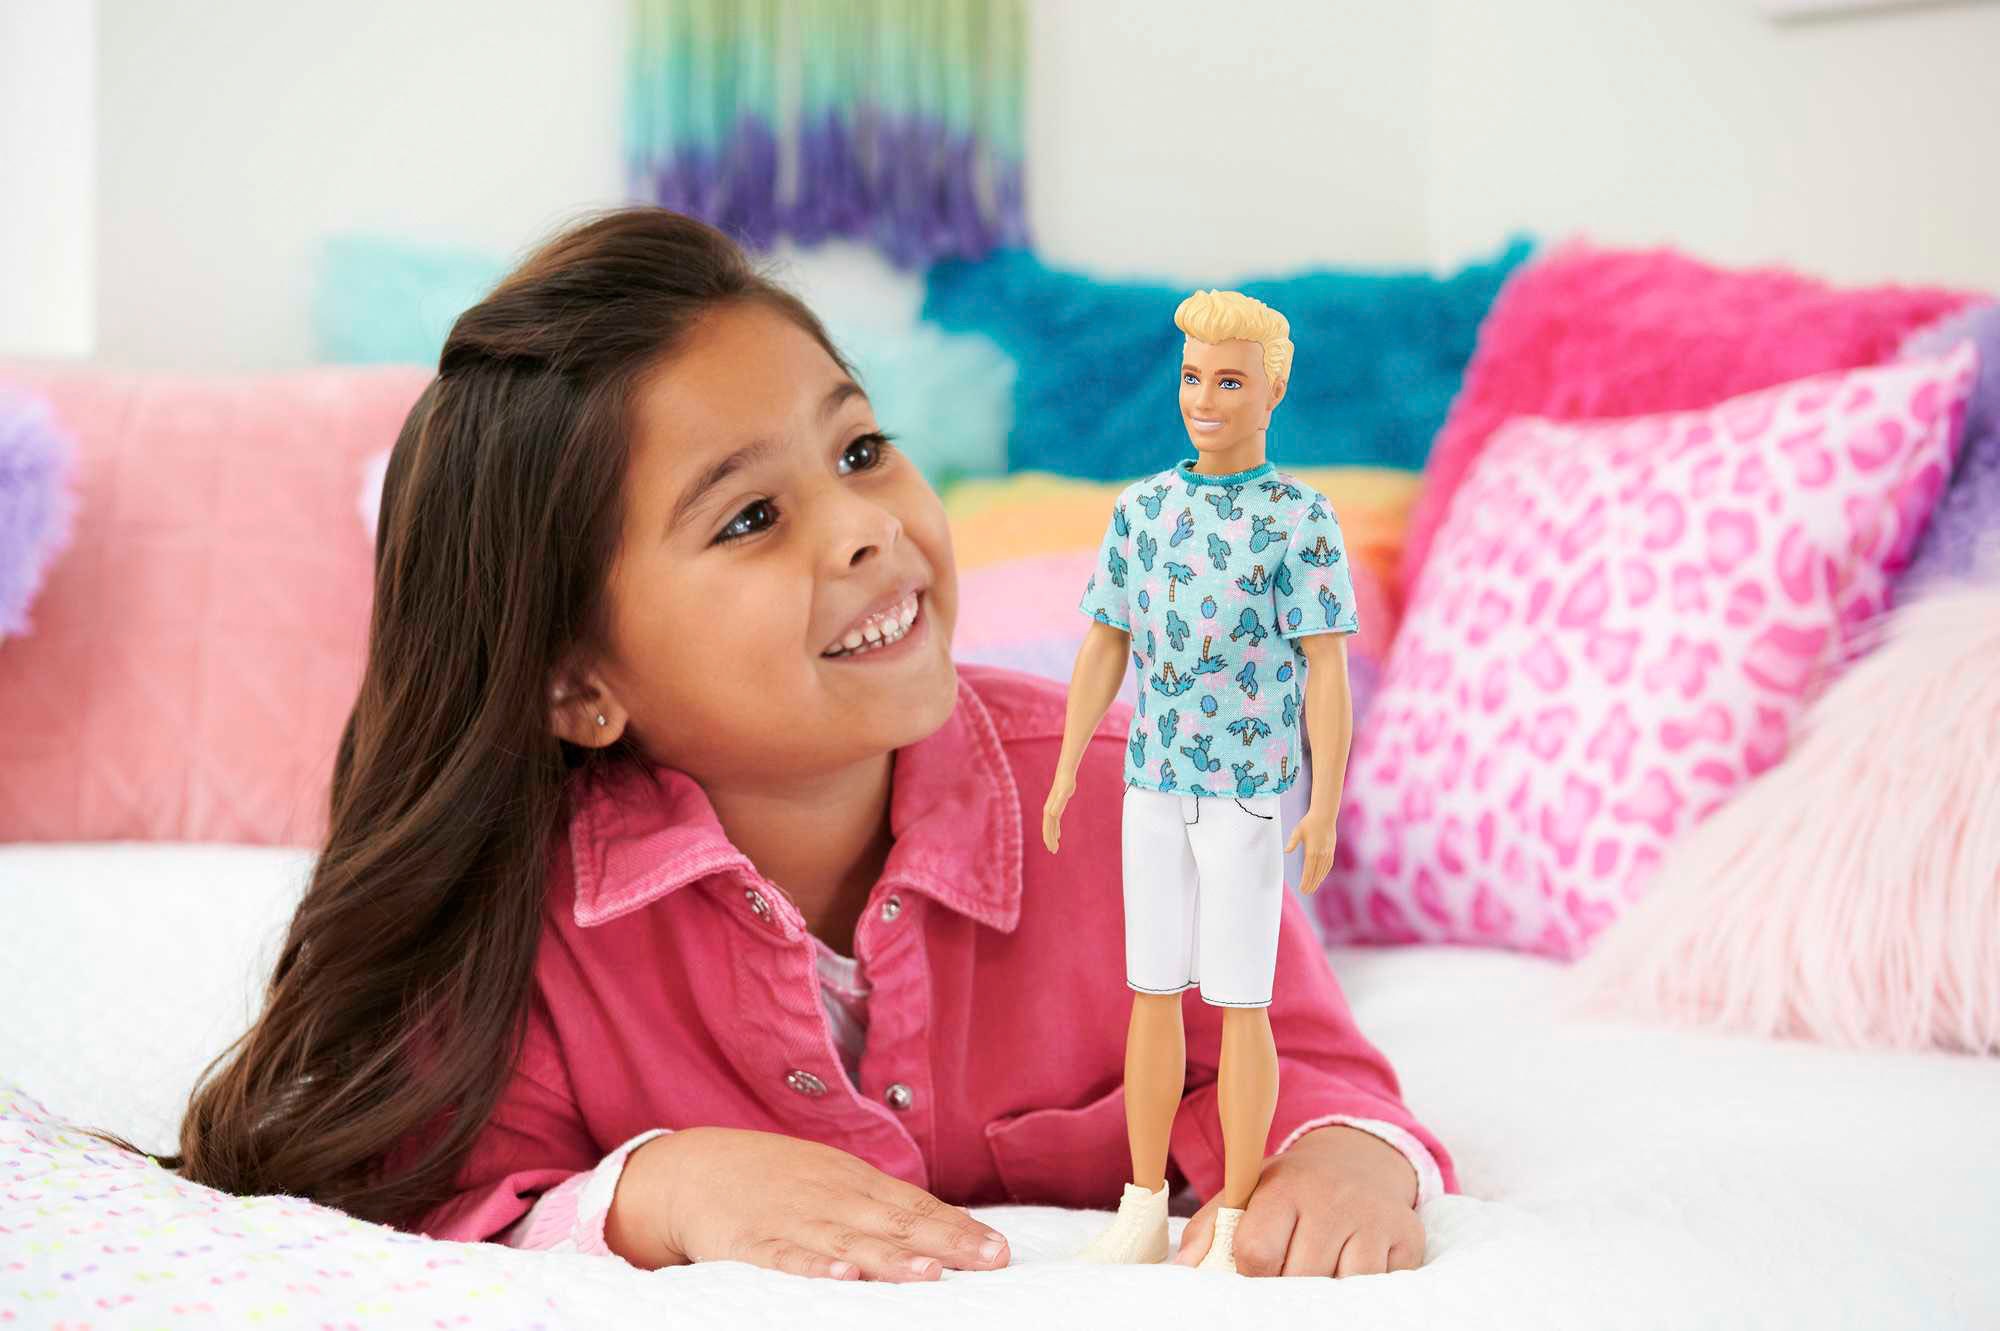 Barbie Anziehpuppe »Fashionistas Ken mit blondem Haar und Kaktus-T-Shirt«